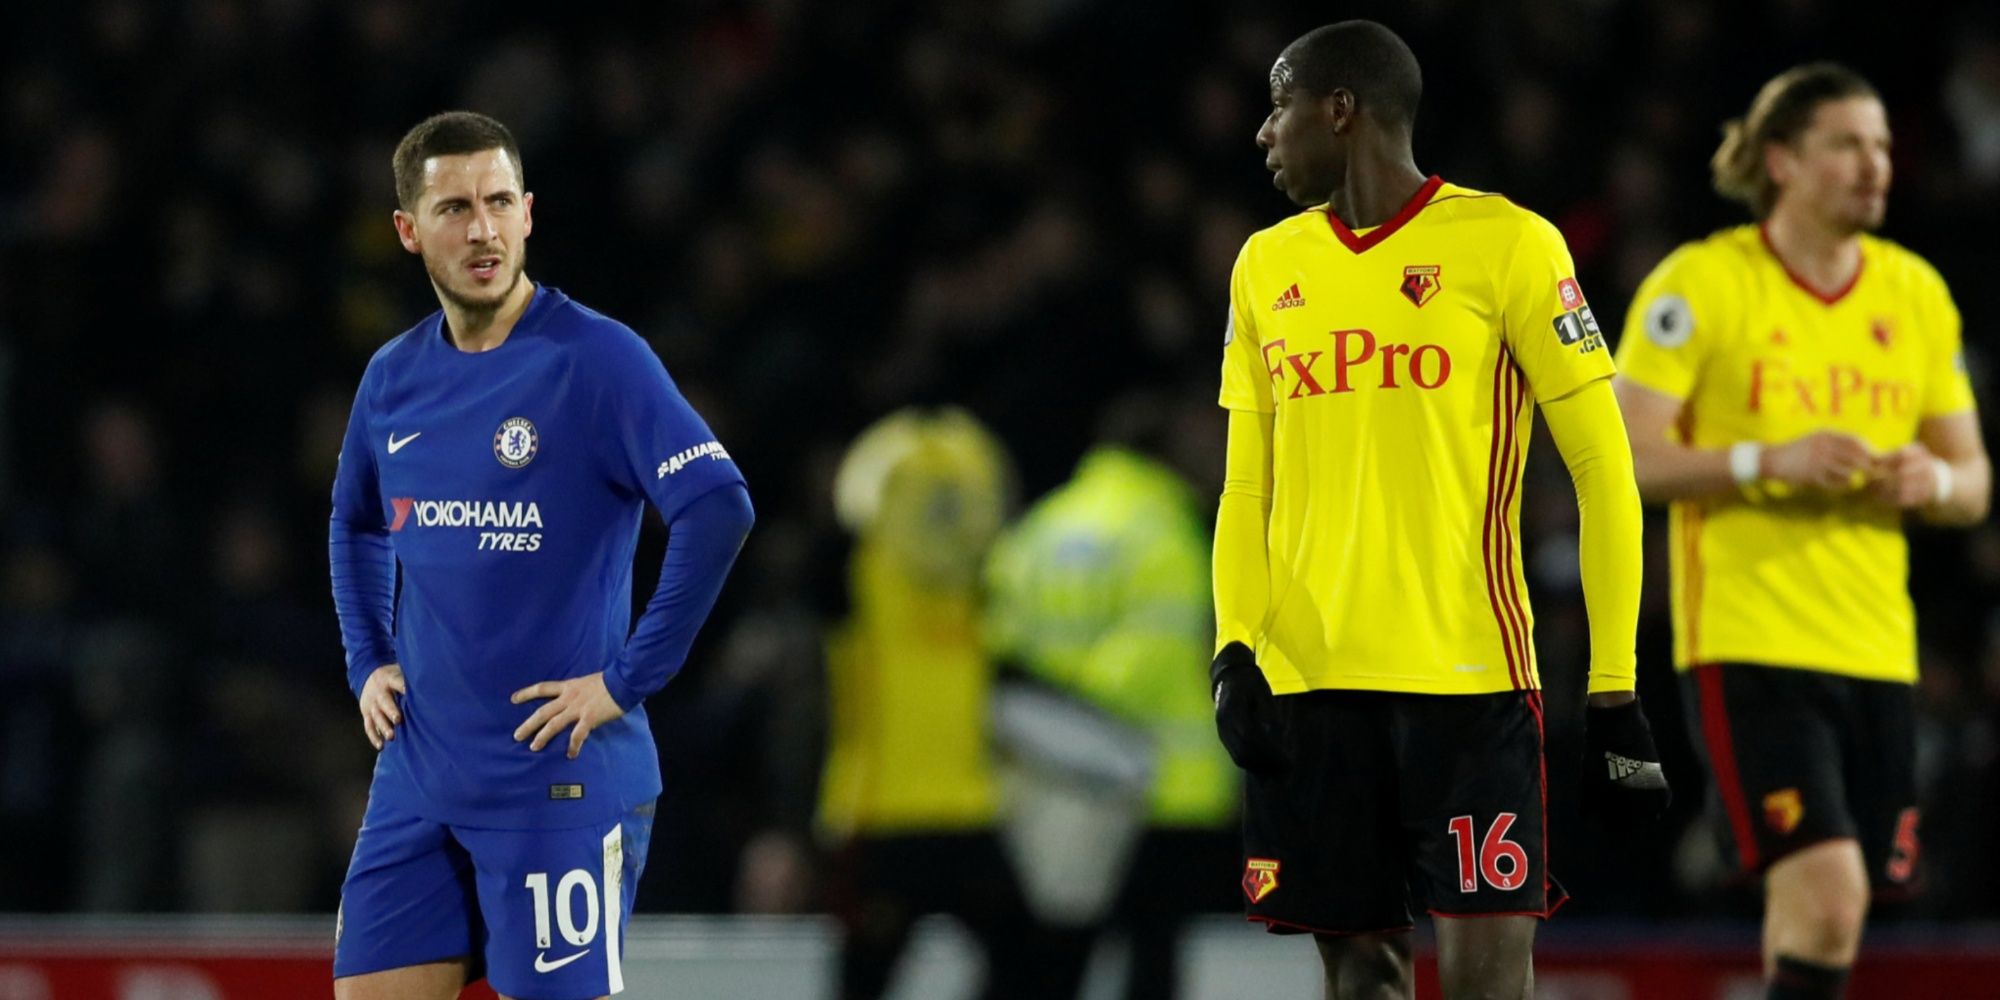 Chelsea's Eden Hazard looks dejected